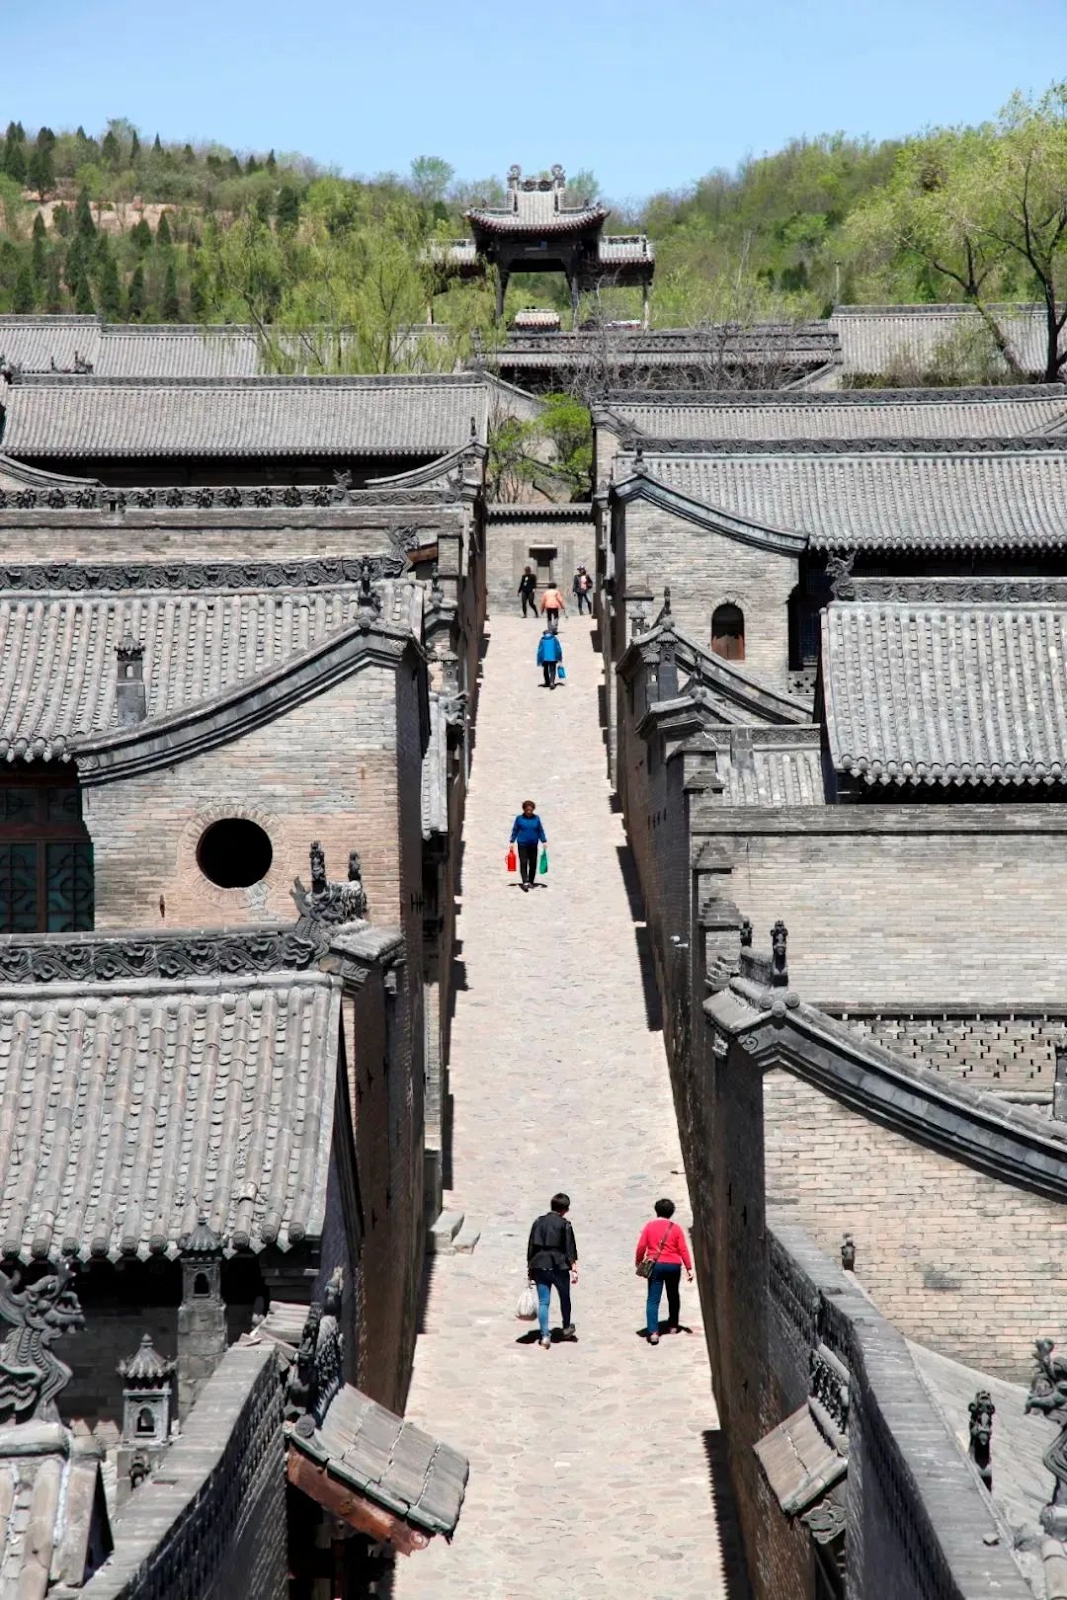 &quot;Khuôn viên tư gia lớn nhất Trung Quốc&quot;: 300 năm mới hoàn thành, “rộng” hơn Tử Cấm Thành 100.000m2 , là nơi ở của gia tộc phồn vinh nhất một thời - Ảnh 4.